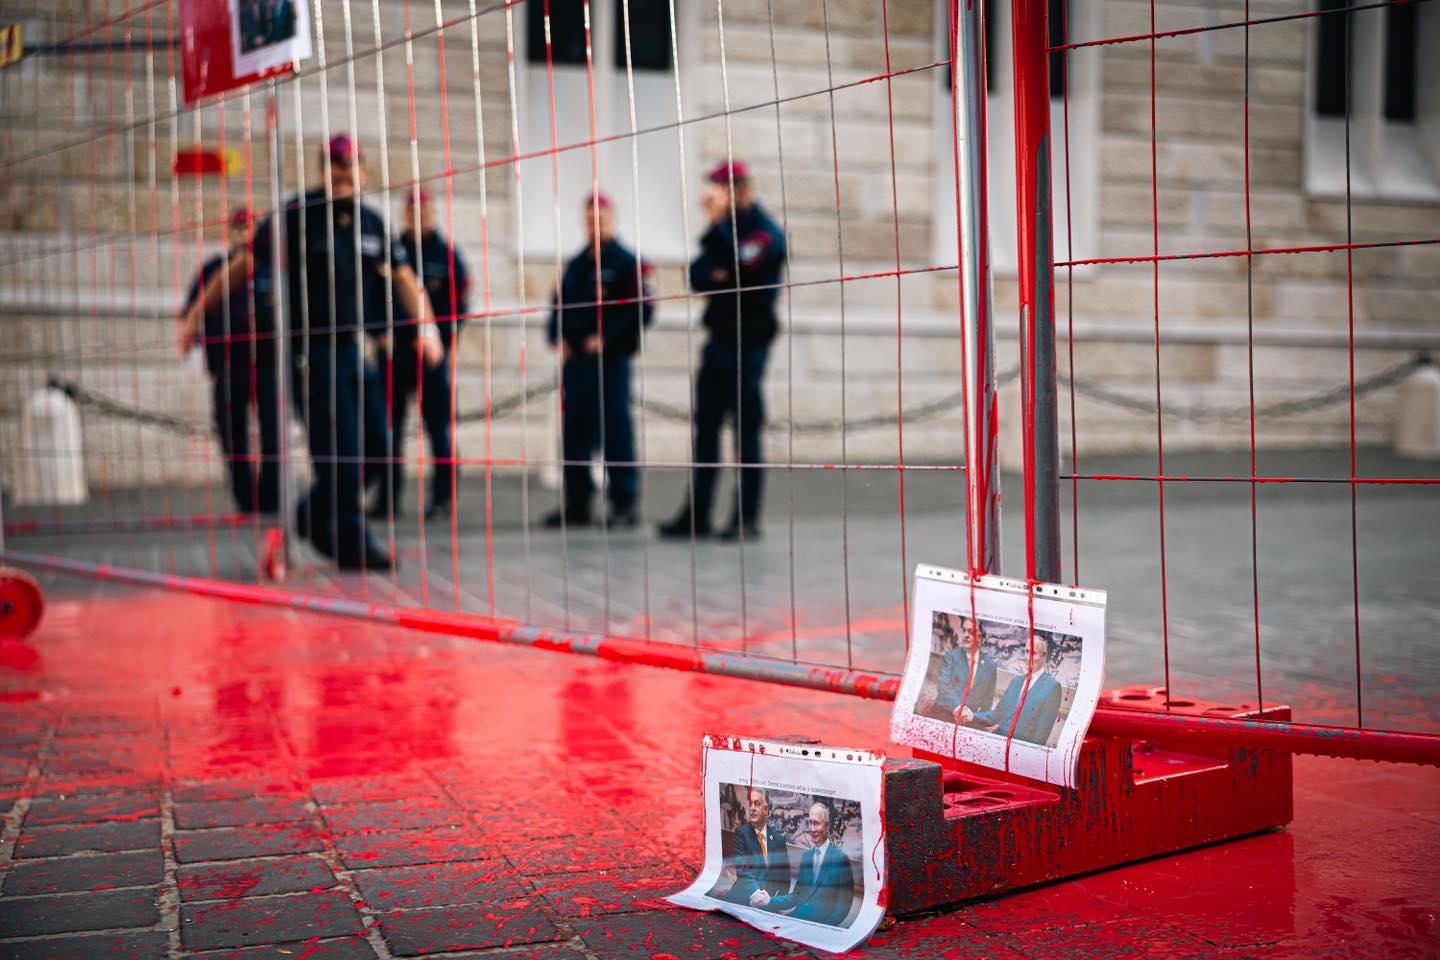 Vérvörös festékkel öntötték le momentumos politikusok a Karmelitánál lévő kordont